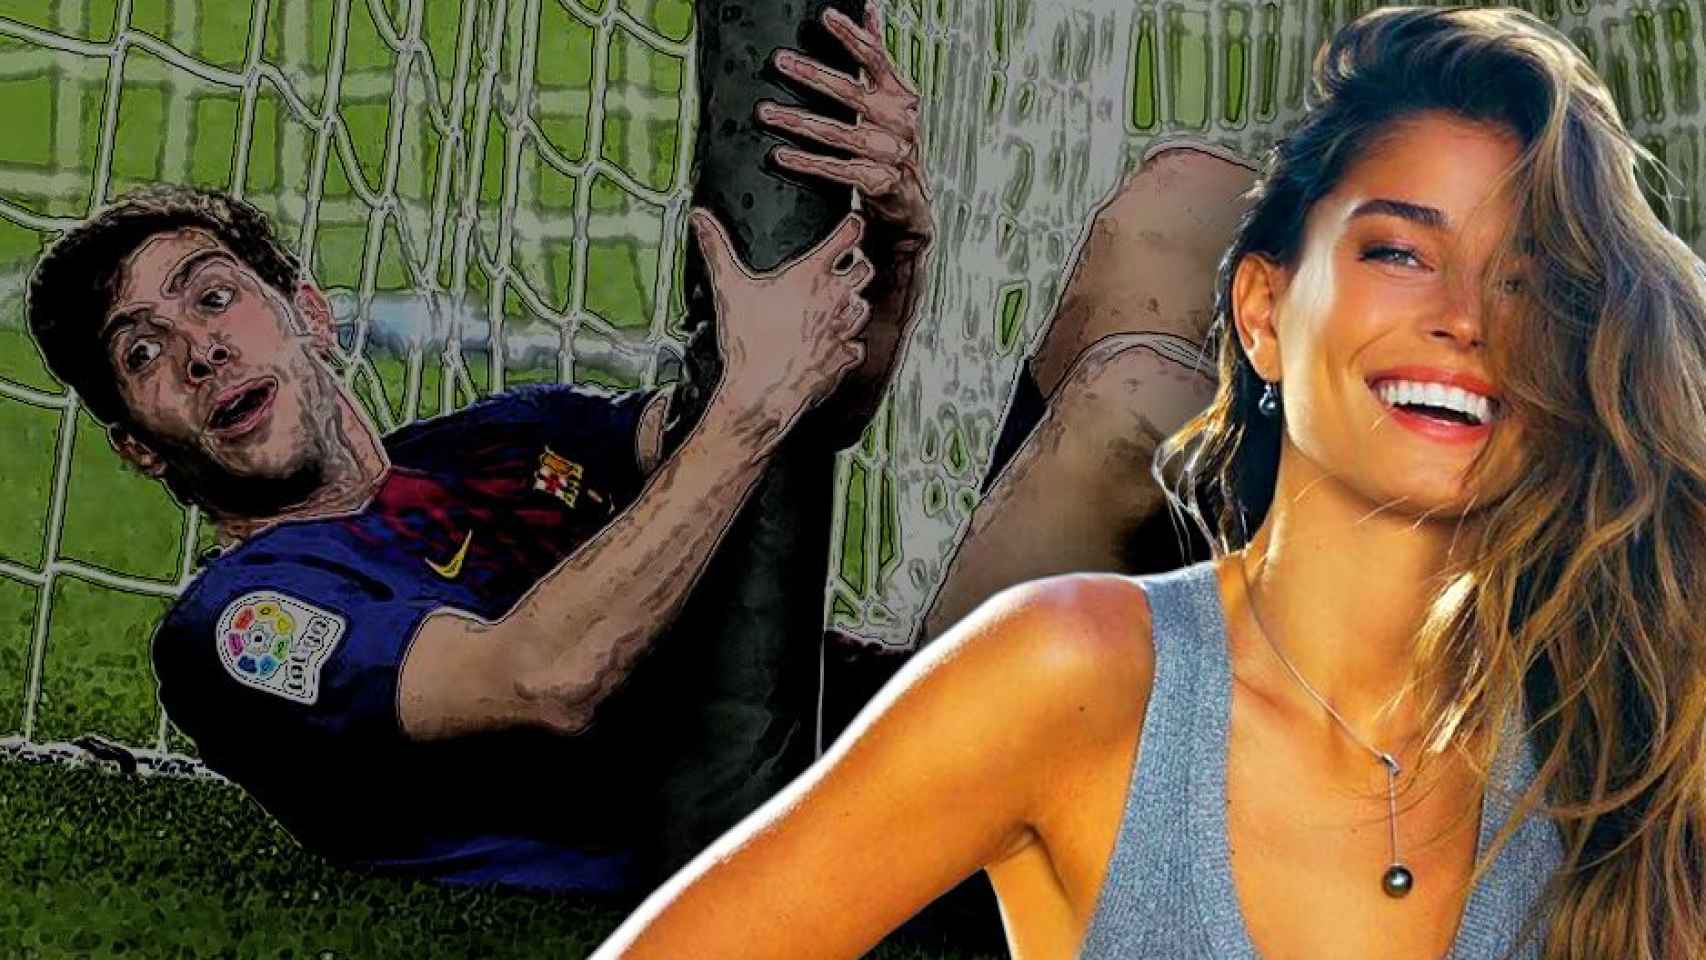 La modelo Coral Simanovich riendo ante una imagen cómica de su marido, el futbolista del Barça Sergi Roberto / FOTOMONTAJE DE CULEMANÍA